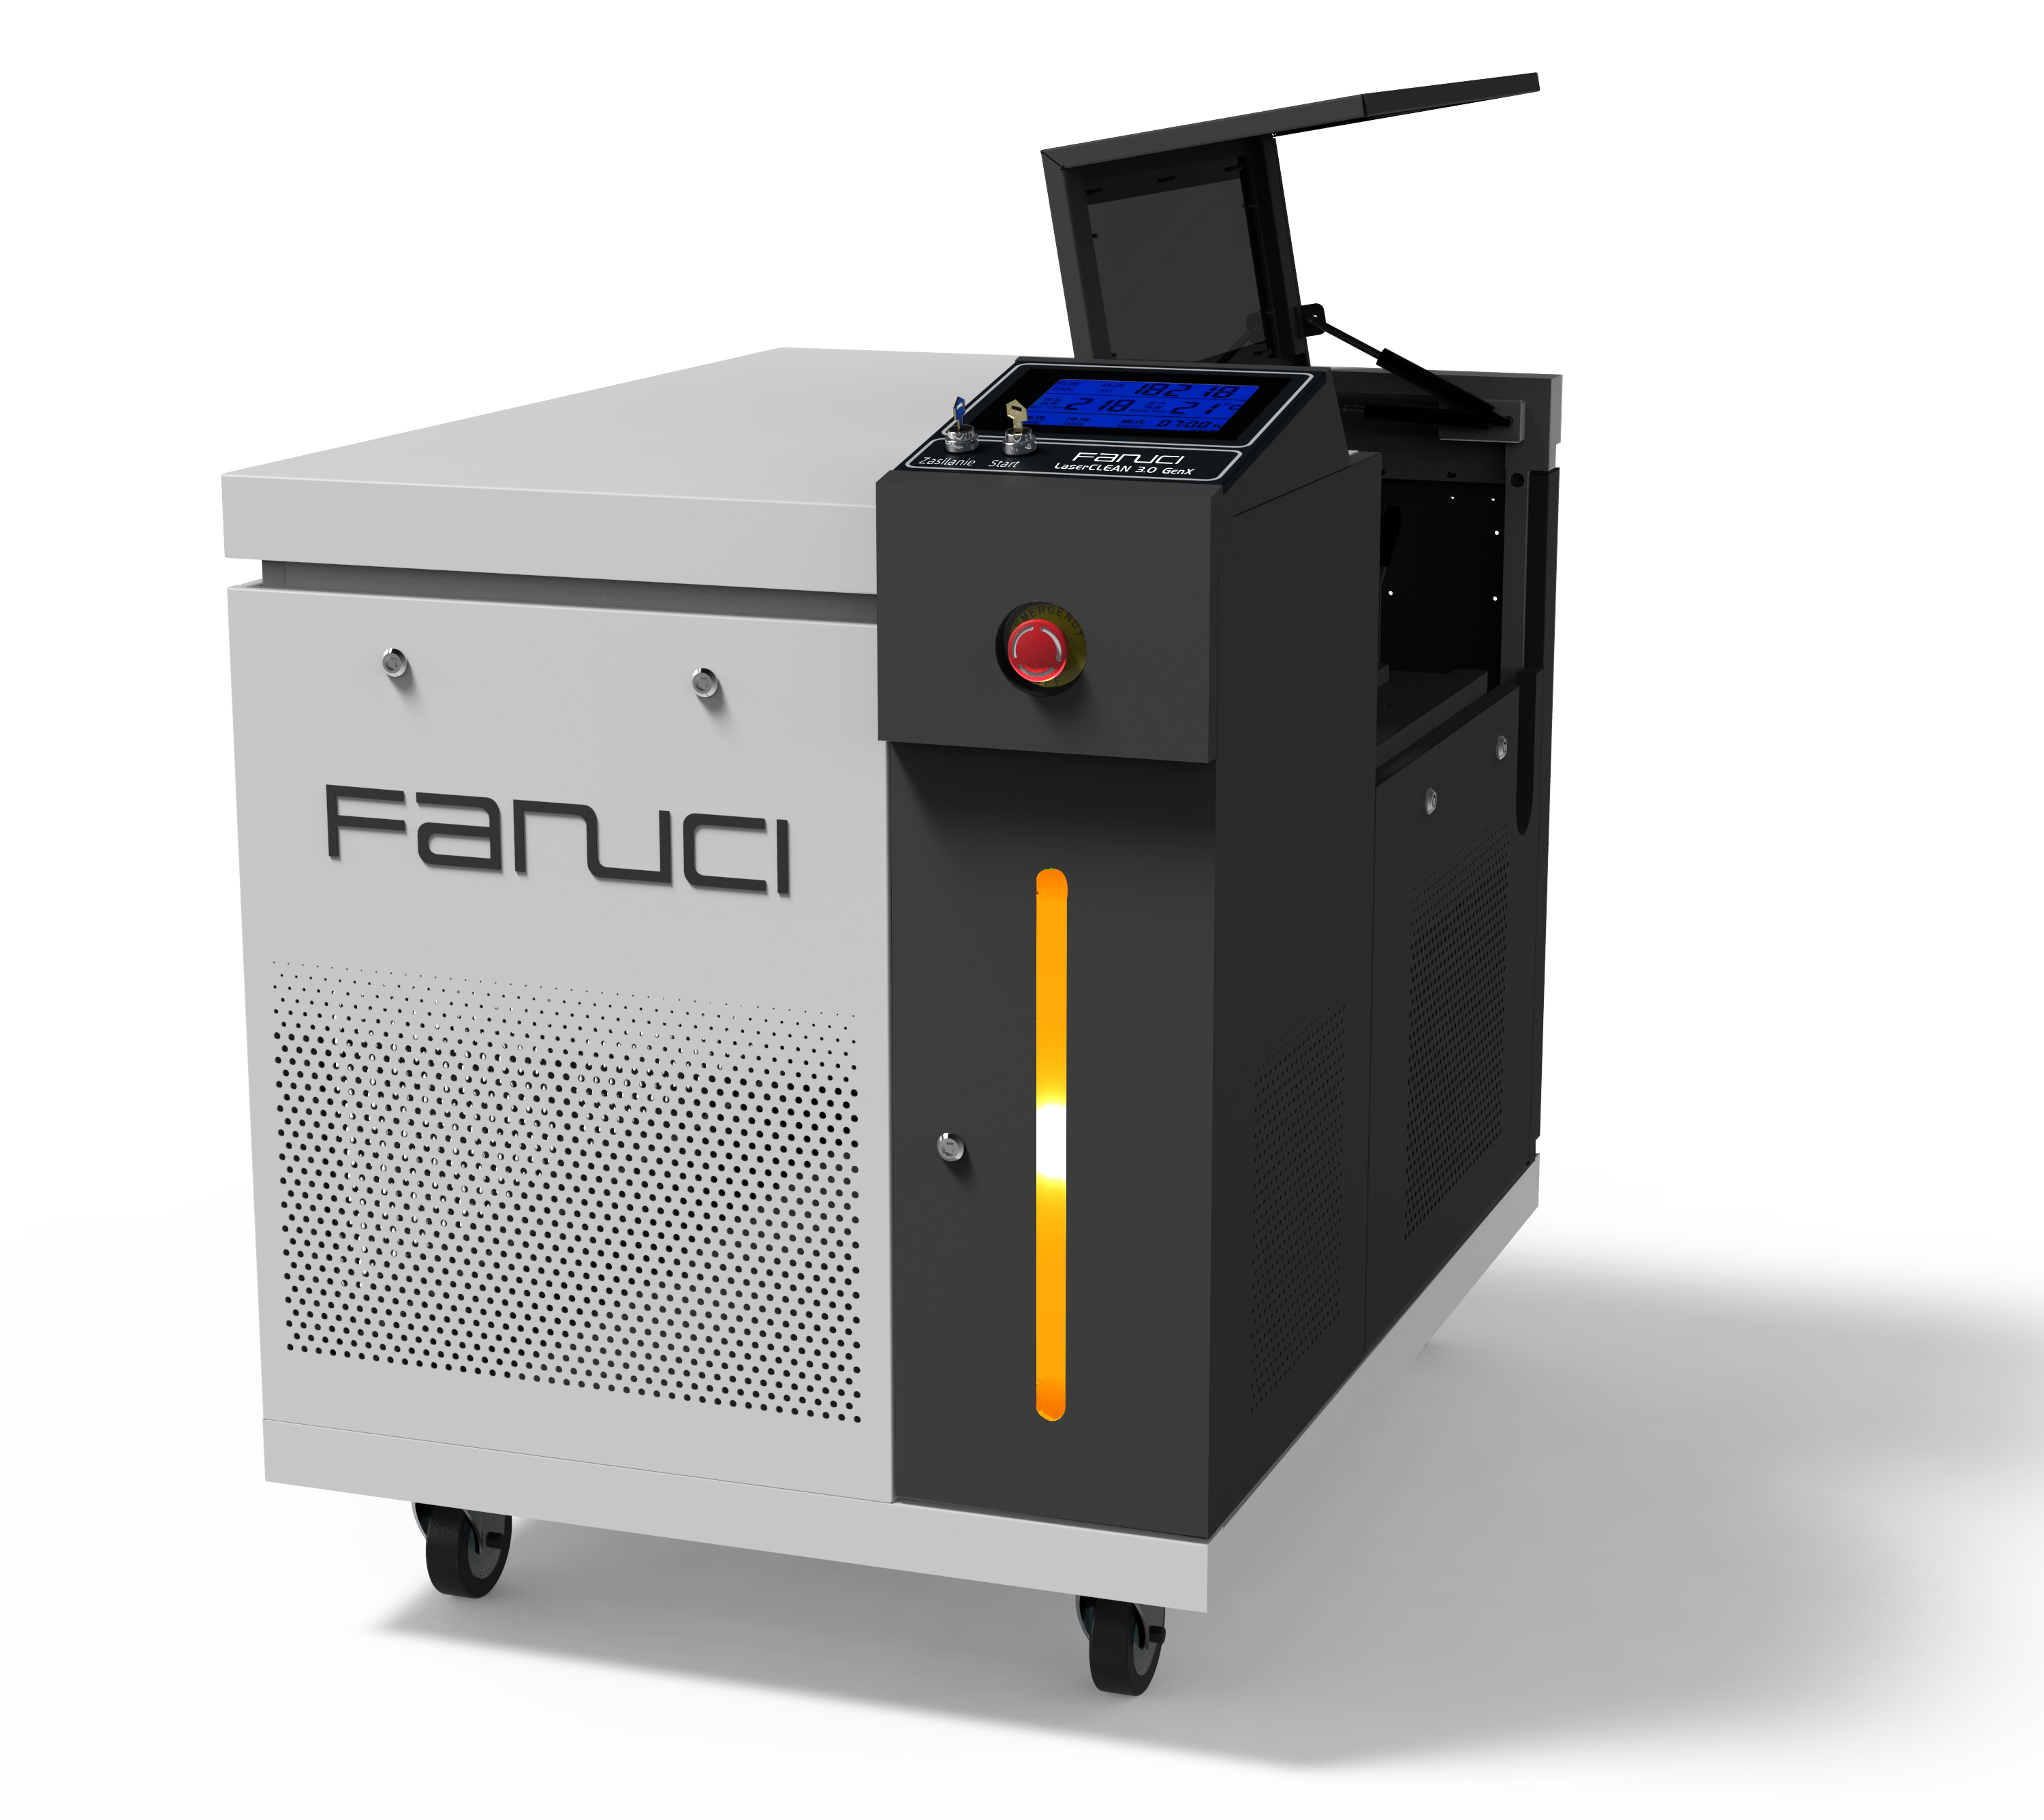 FANUCI® Pro Kompaktes Laserschweißgerät Four in One wird nach Europa geliefert